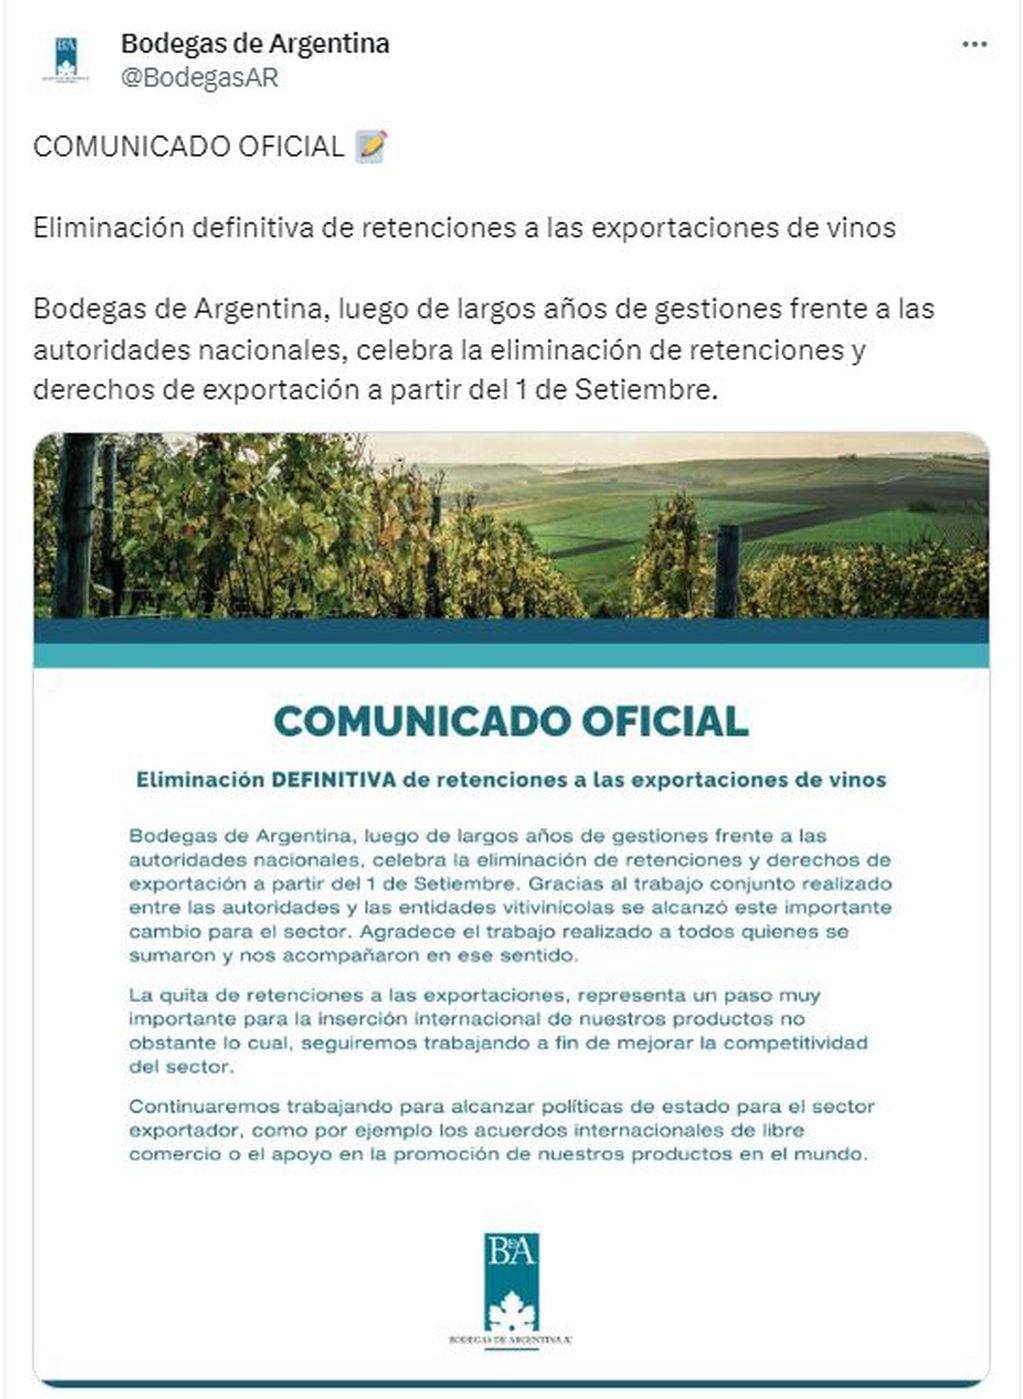 Comunicado de Bodegas Argentinas, tras la eliminación de las retenciones al vino.